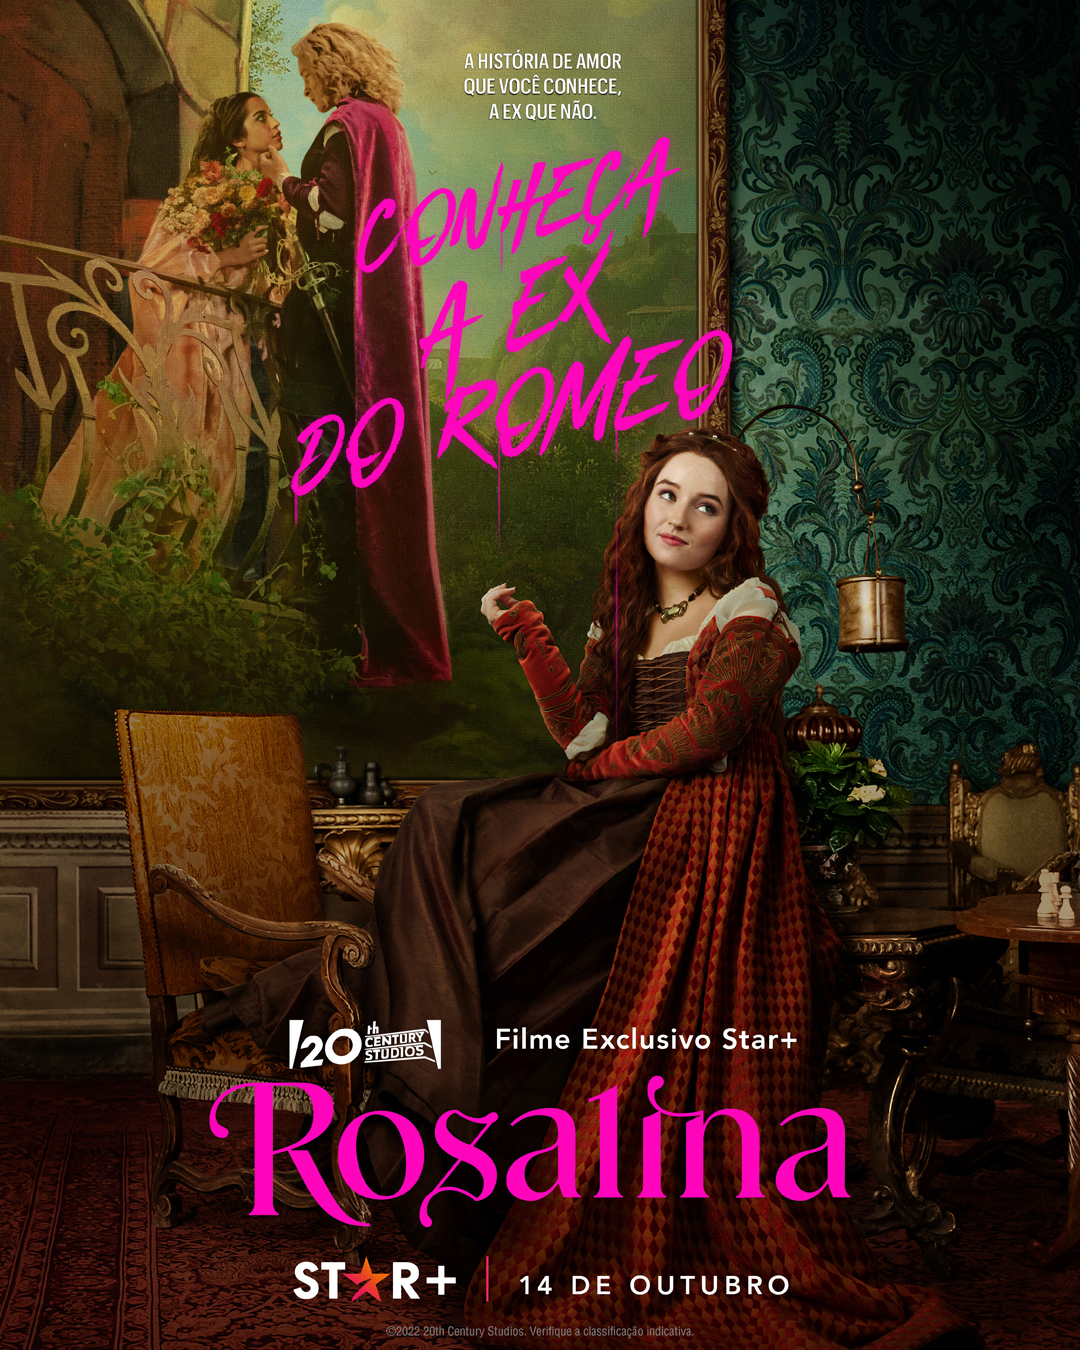 Conheça a ex do Romeu: "Rosalina" ganha fotos e data de estreia no Brasil